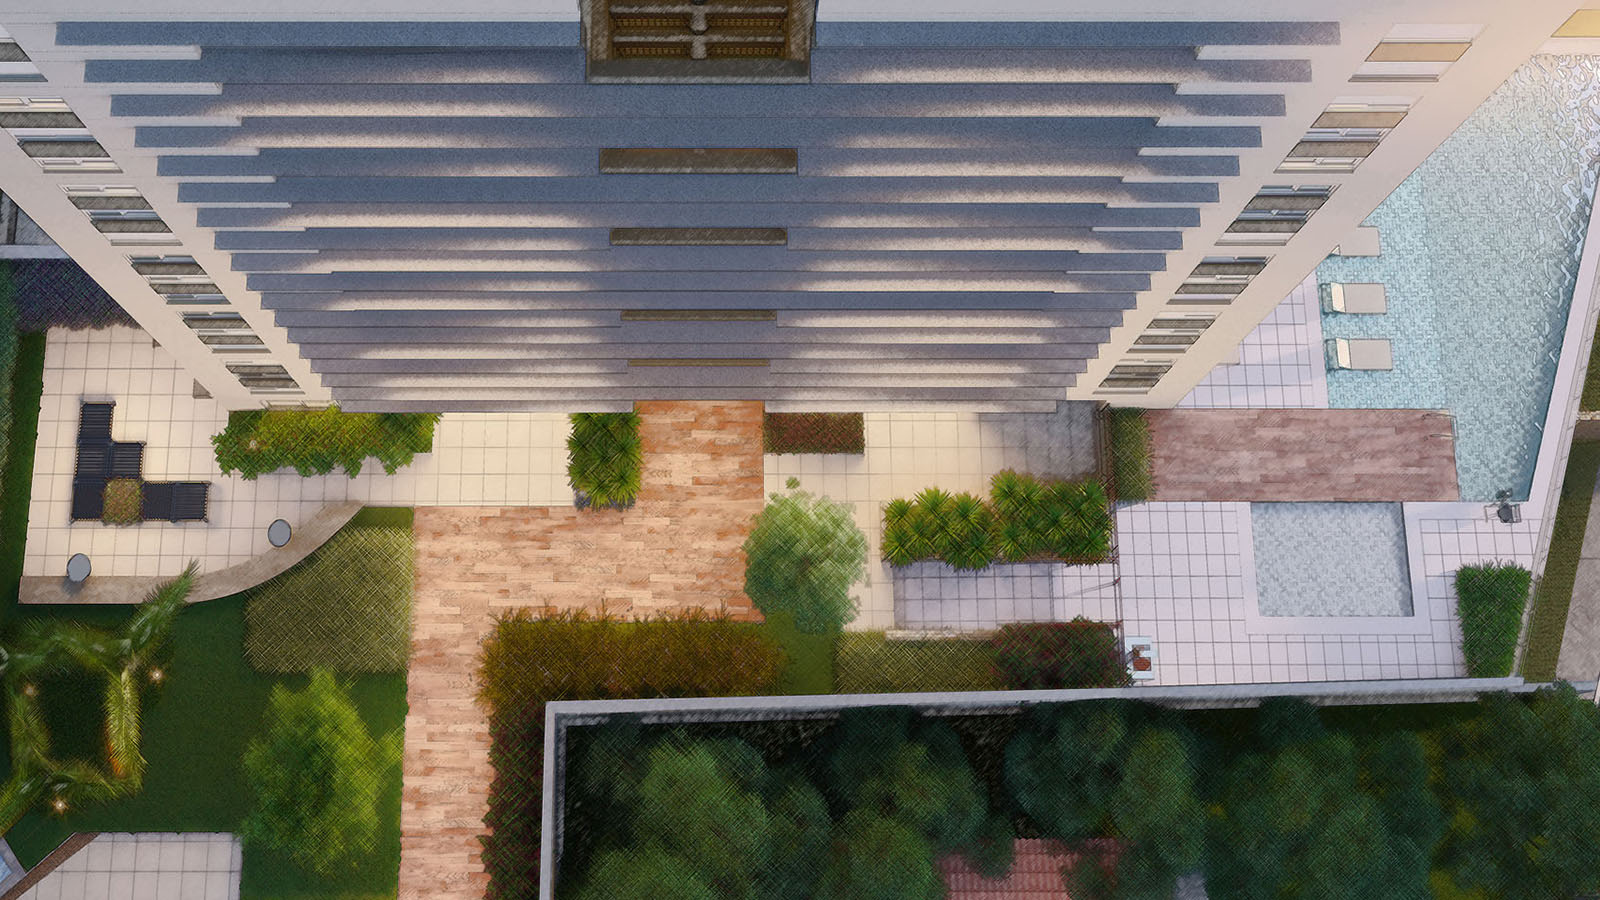 Perspectiva ilustrada do detalhe aéreo da fachada